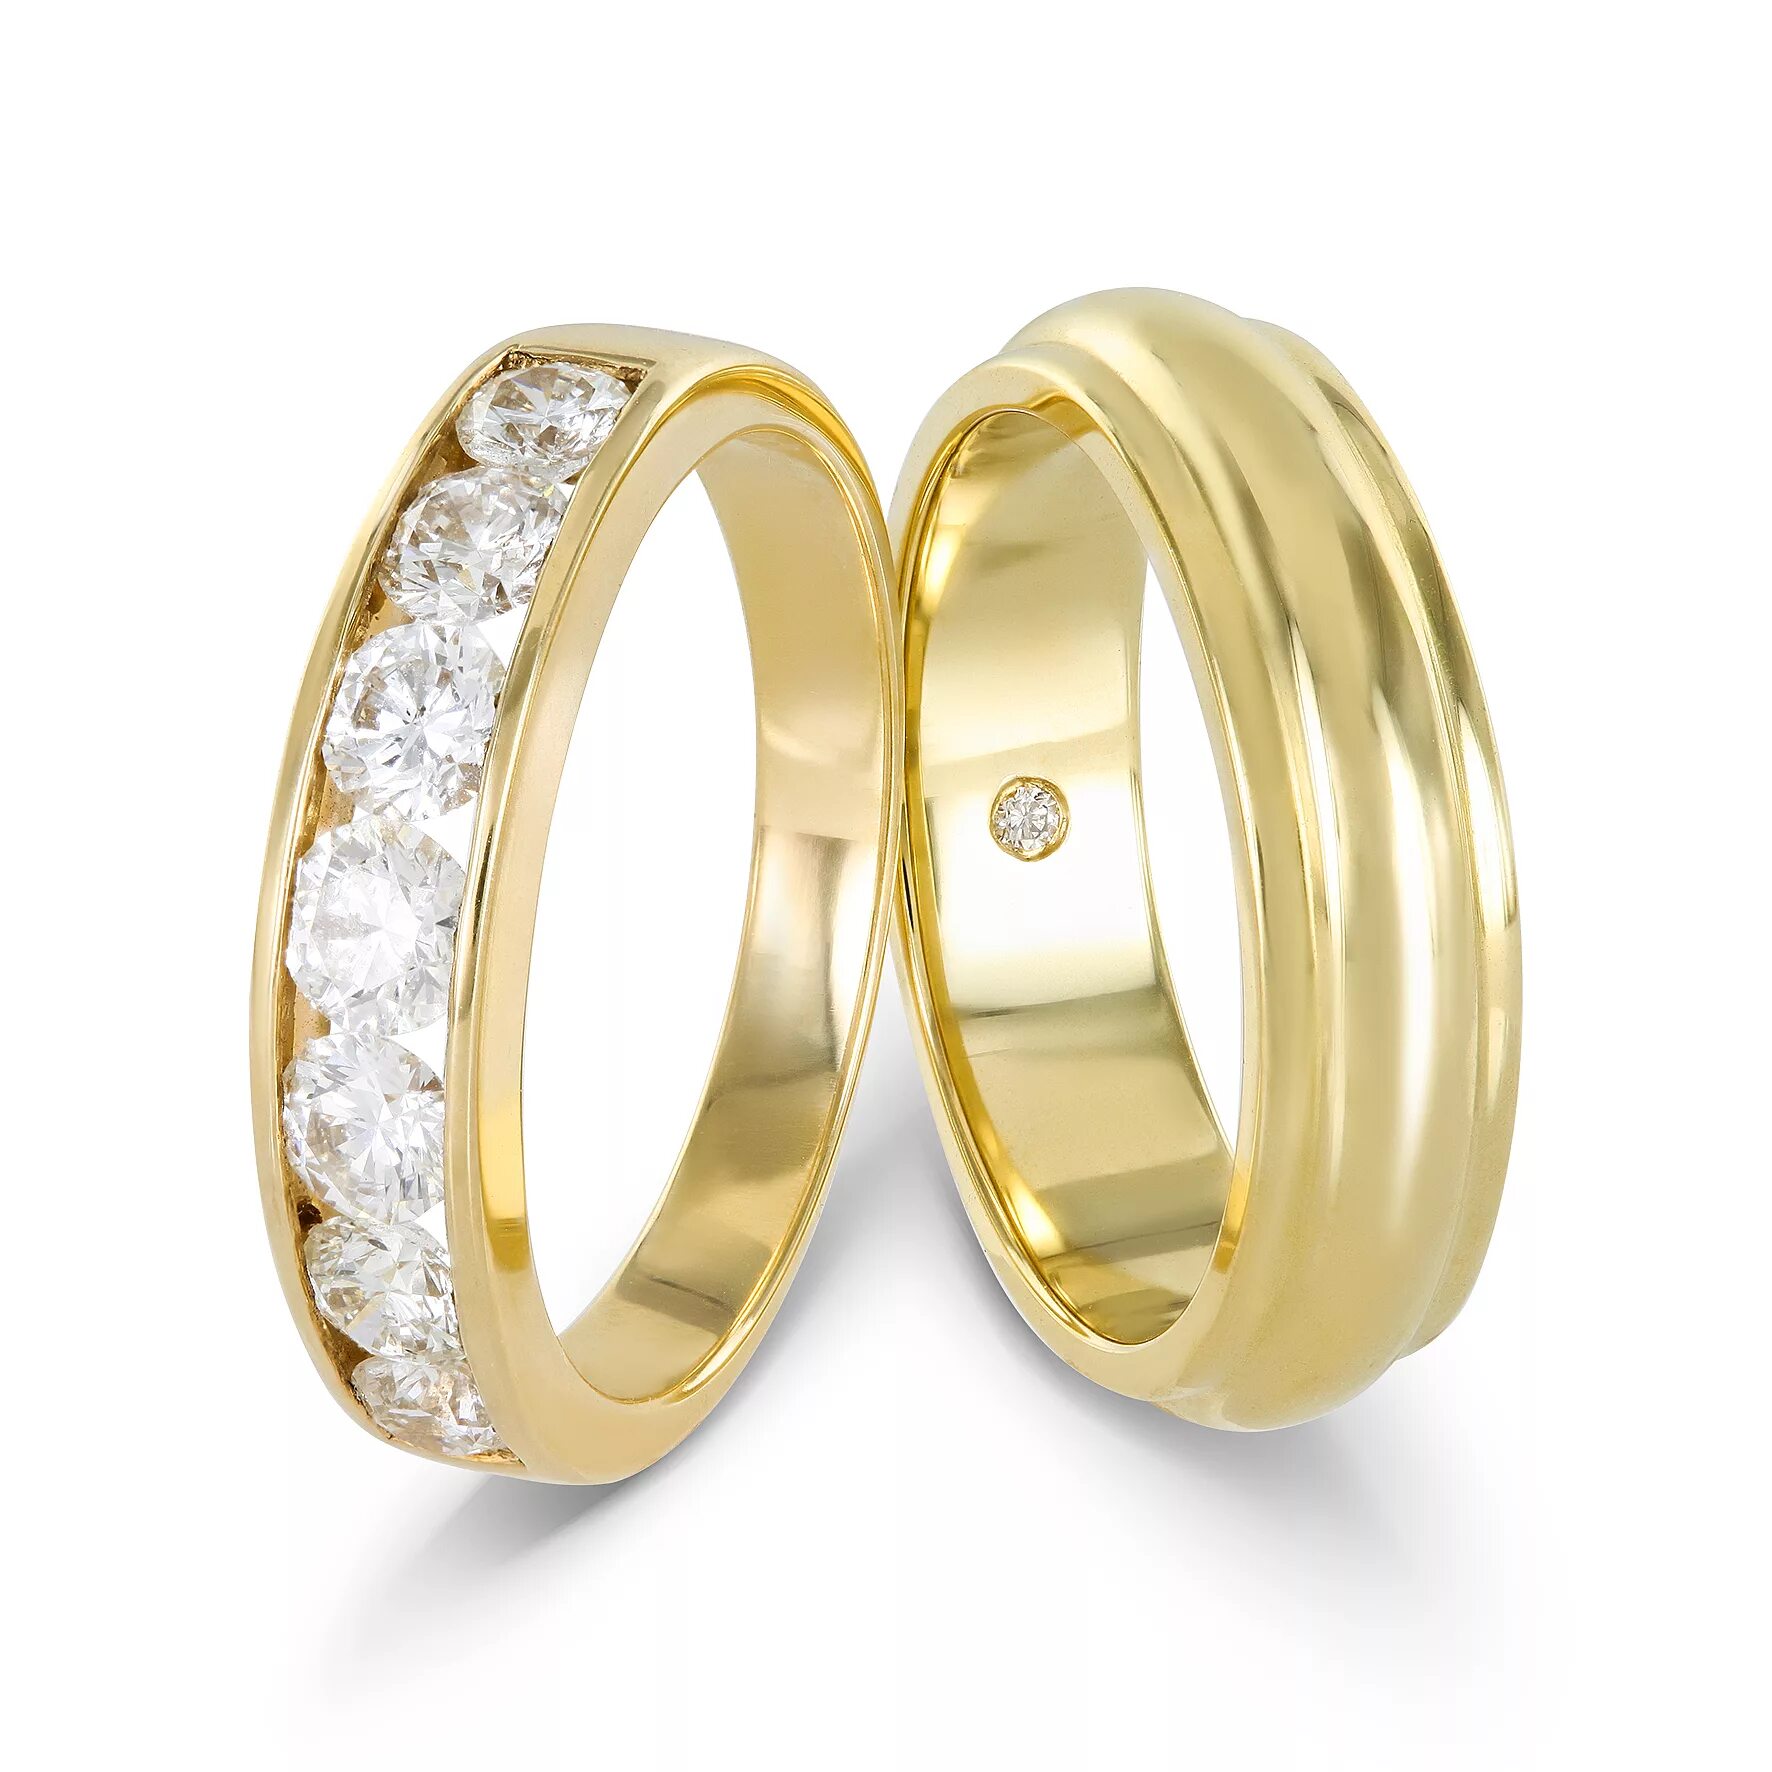 Обручальные кольца парные 585 Соколов. Обручальные кольца парные золотые 585 жёлтое золото. Обручальные кольца парные 585 с бриллиантами. Парные обручальные кольца 585 печатки. 585 обручальные парные